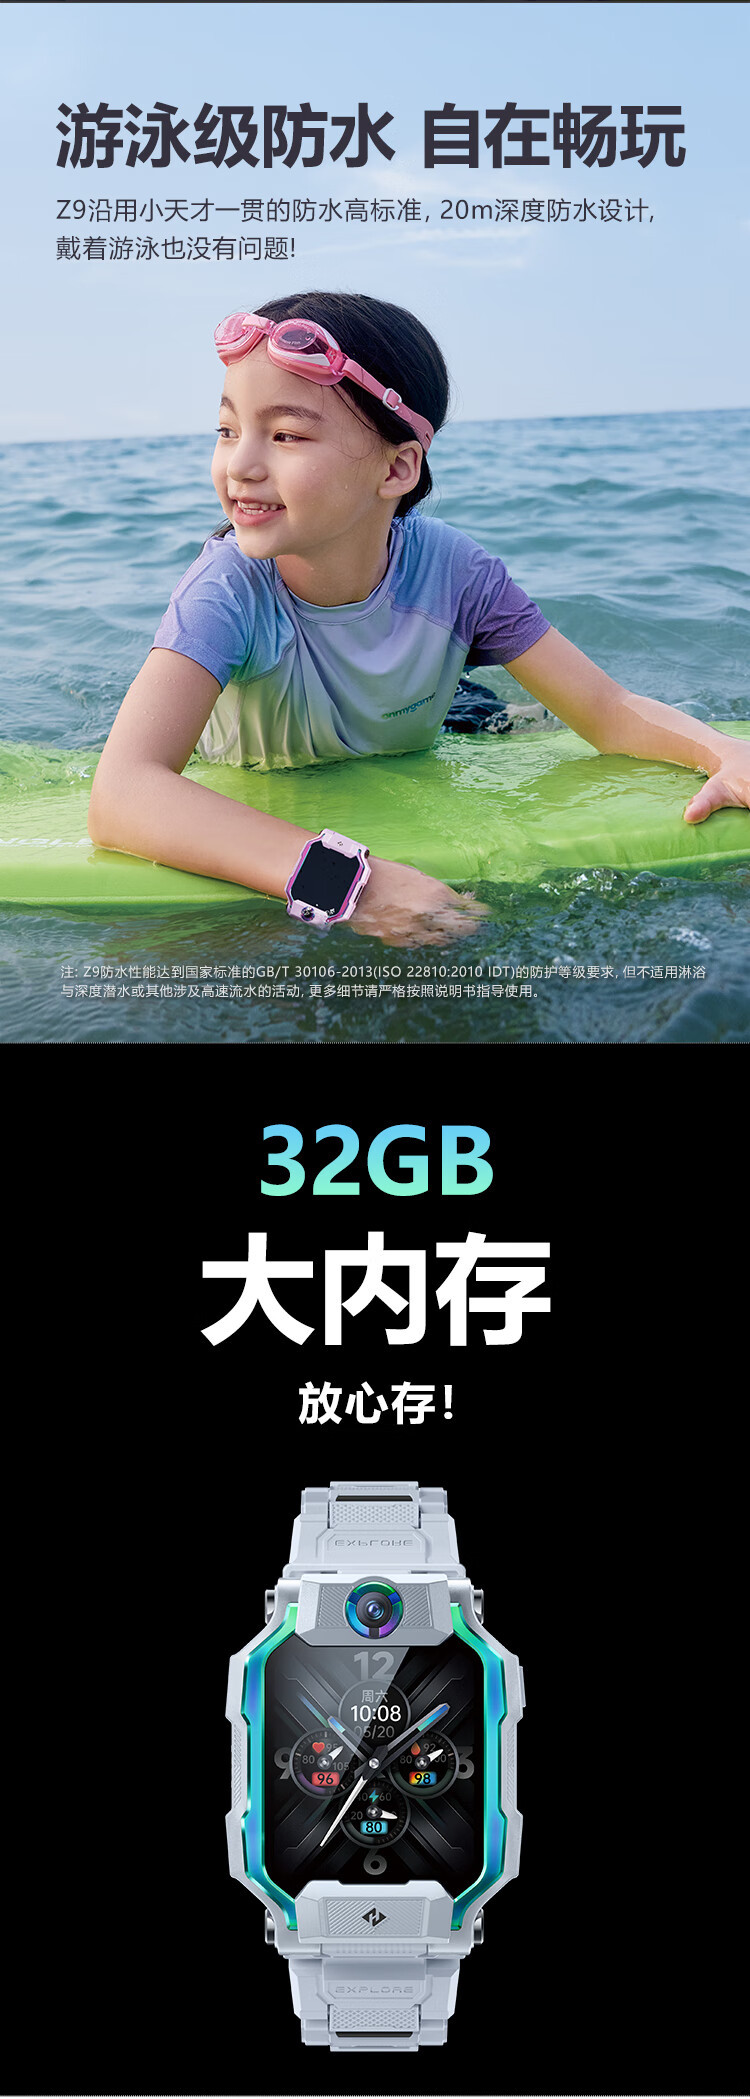 小天才旗舰新品儿童电话手表Z9体温监测智能手表视频拍照双摄